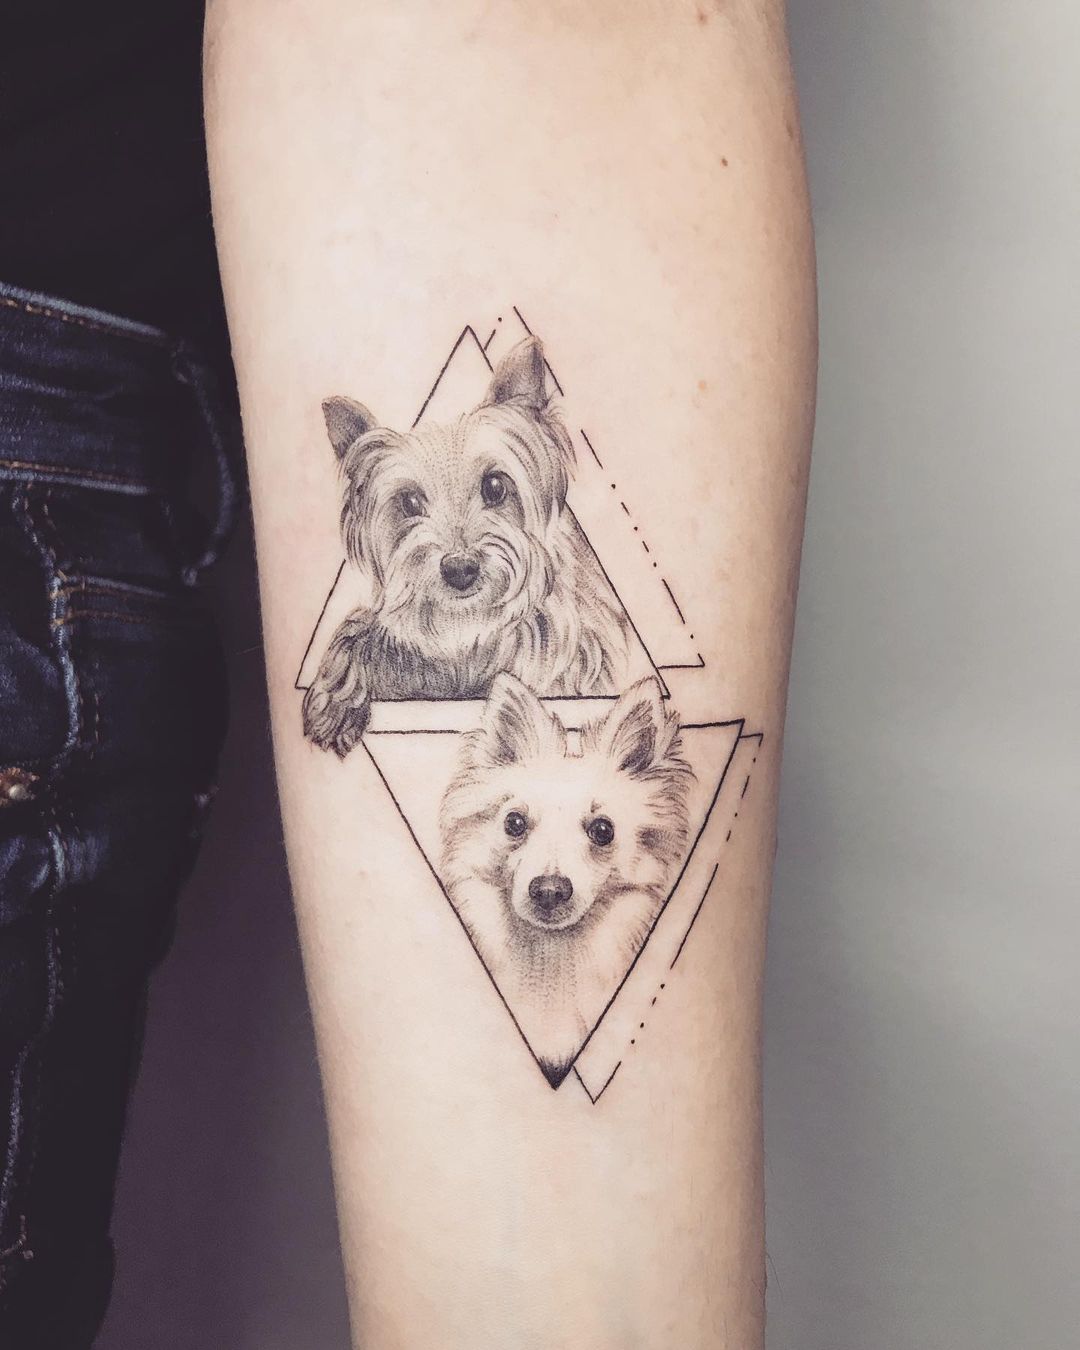 Tattoo perretes en el antebrazo @mire_tattoo